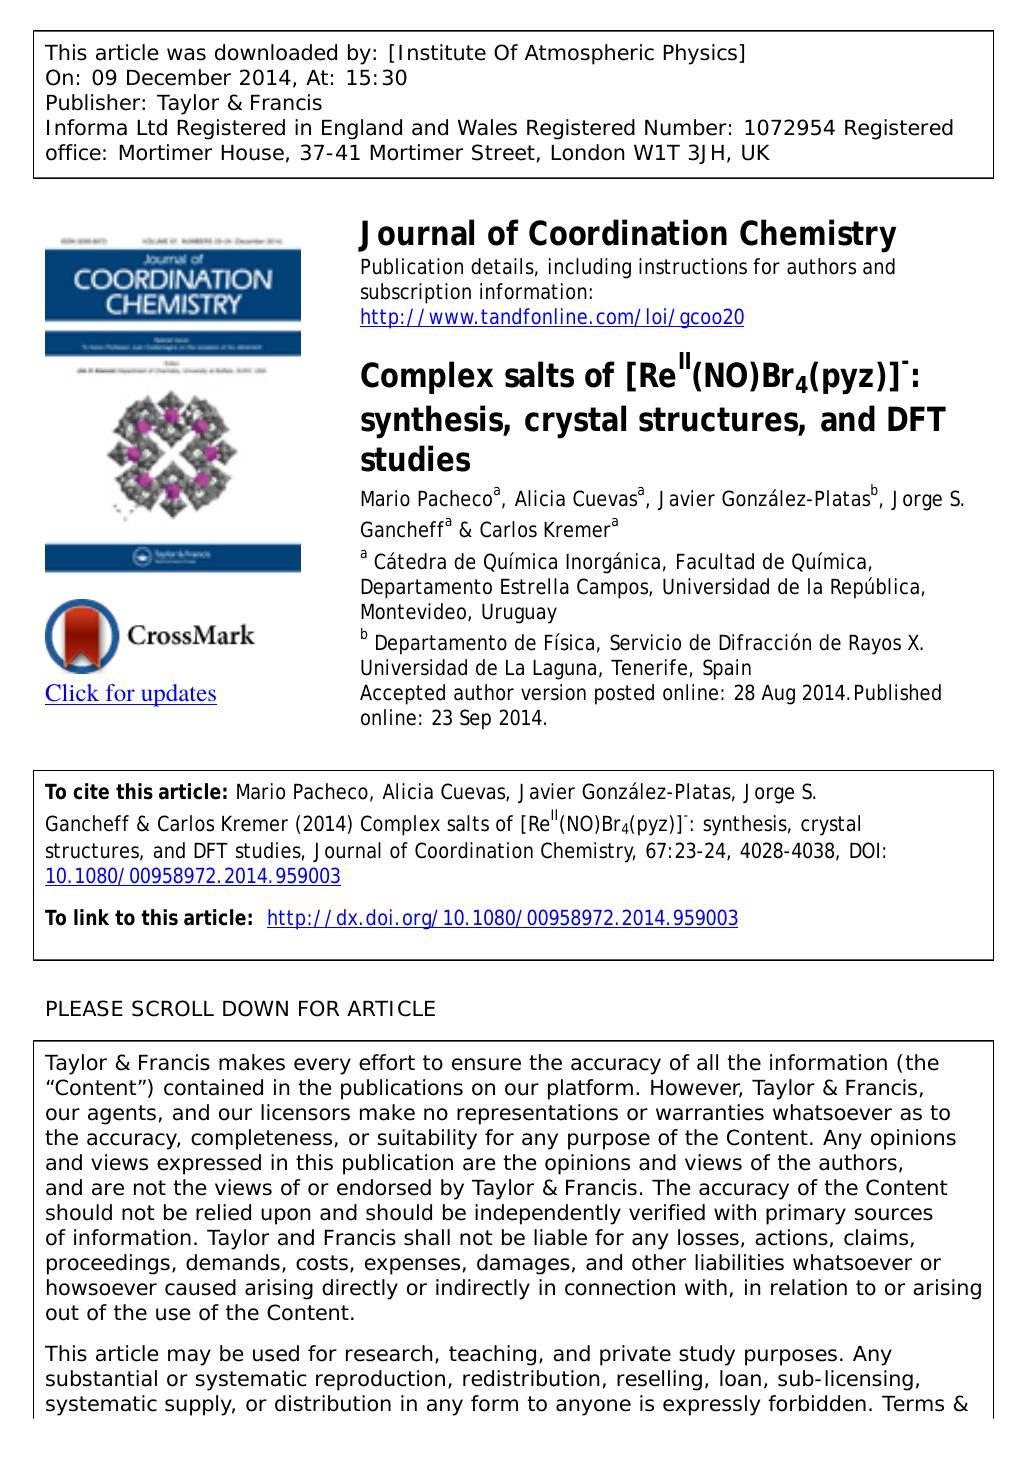 Complex salts of [ReII(NO)Br4(pyz)]â: synthesis, crystal structures, and DFT studies by Mario Pacheco